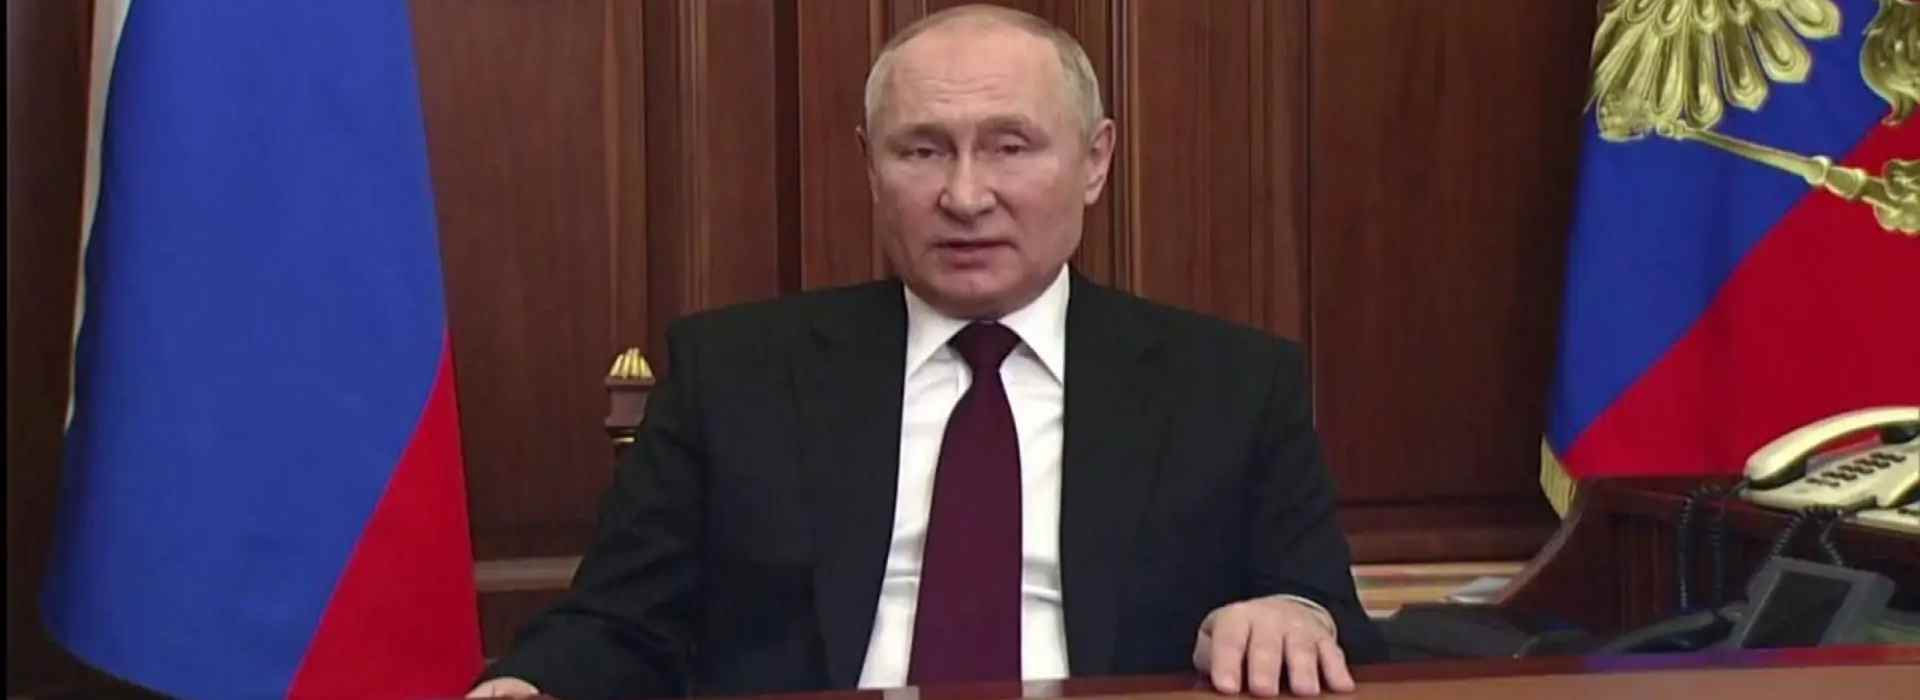 Russia-Ucraina, Putin: "Inizio di un'operazione speciale militare nel Donbass" - video